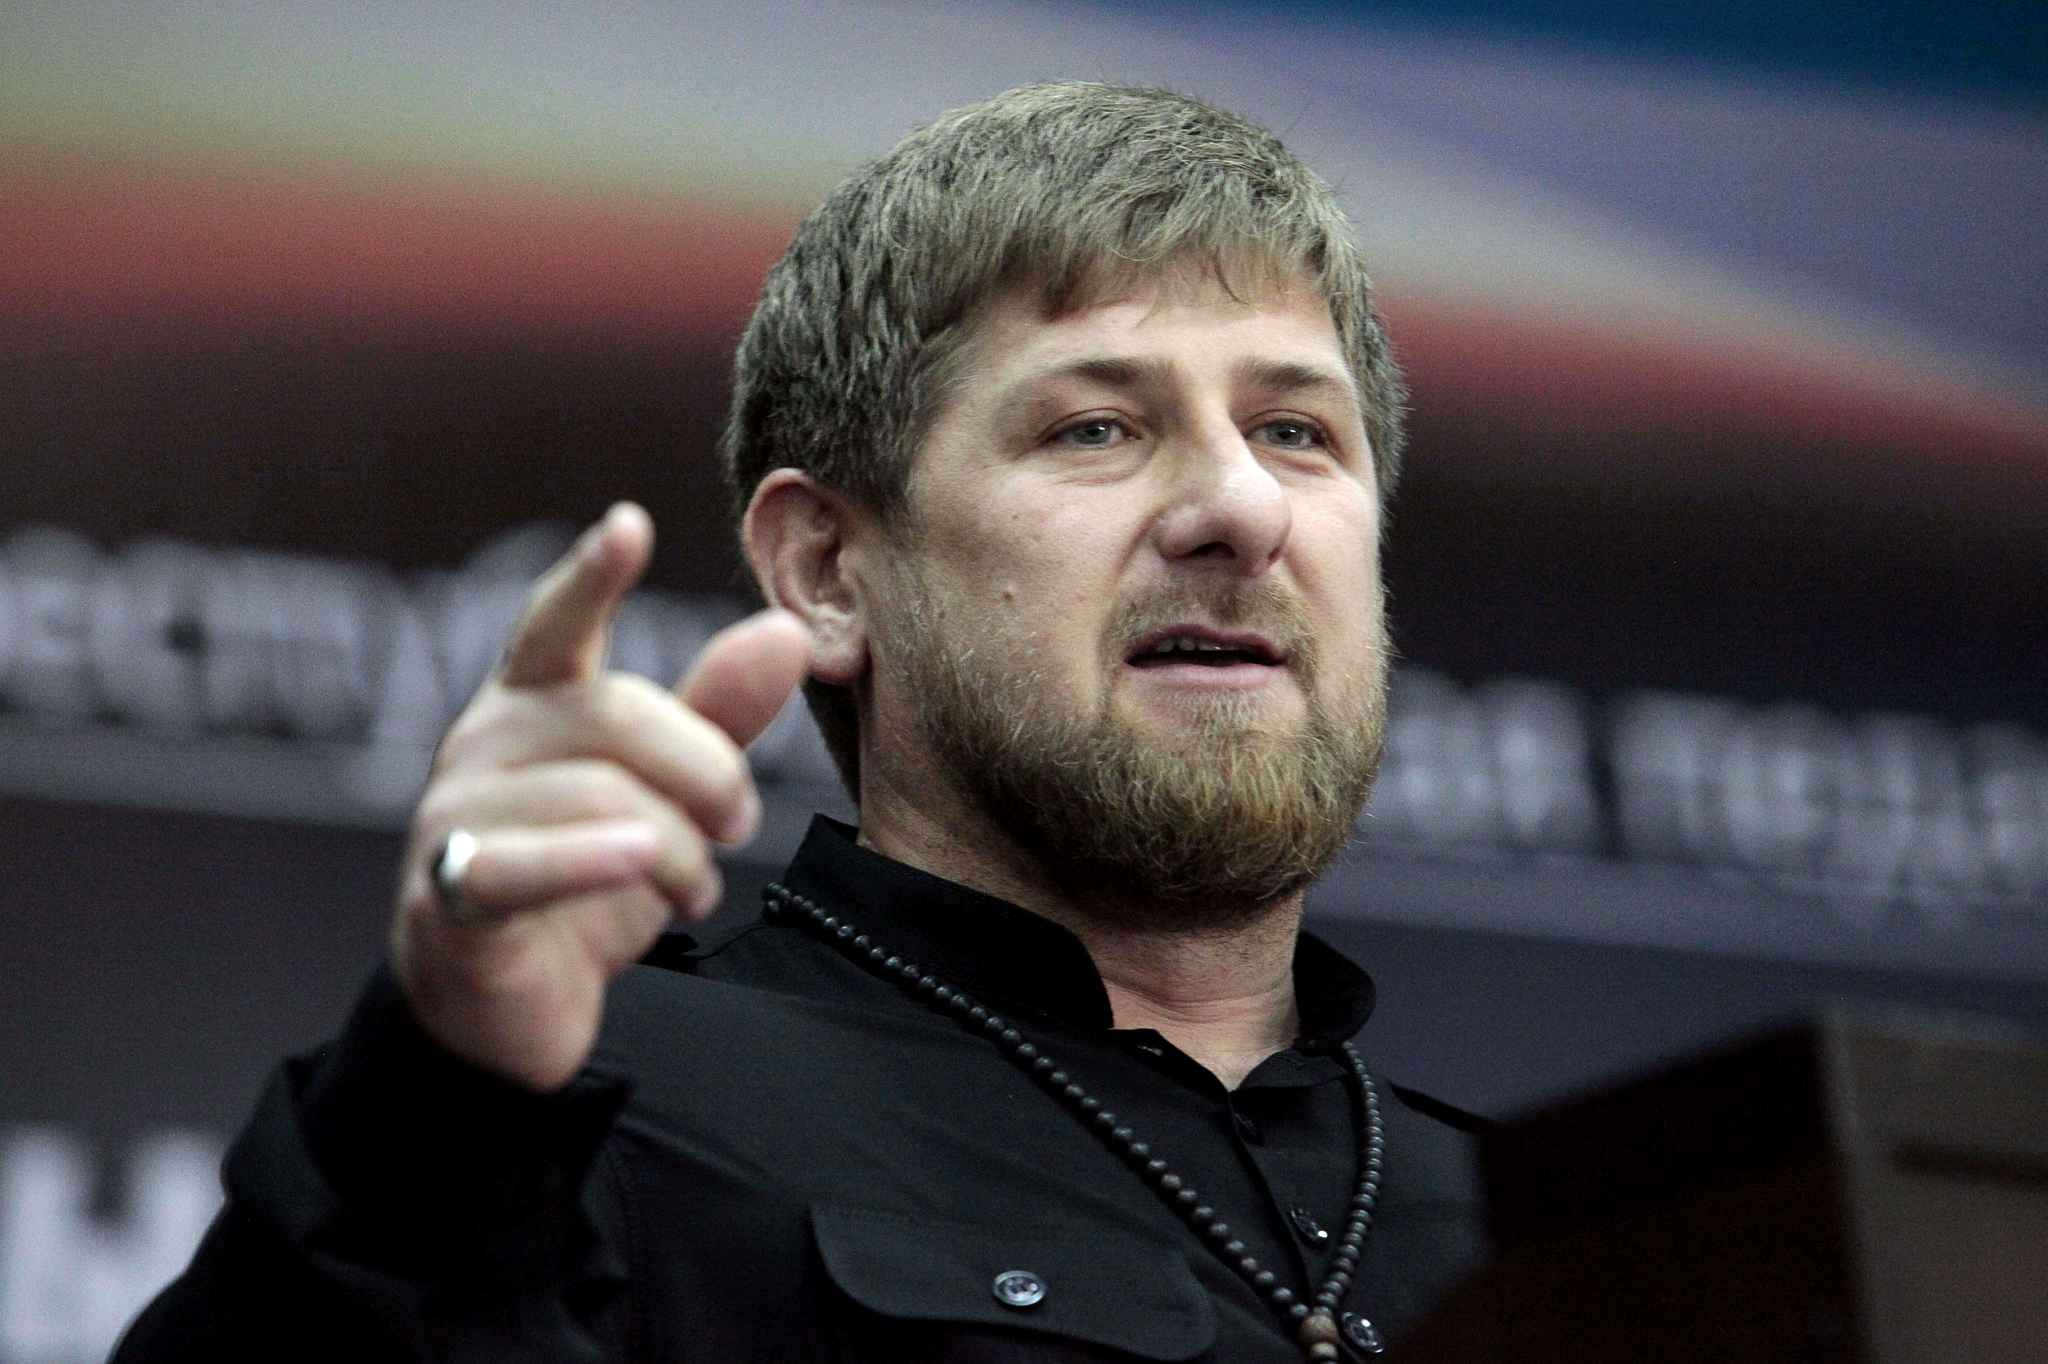 Рамзан Кадыров прокомментировал слухи о часах за $280 тысяч